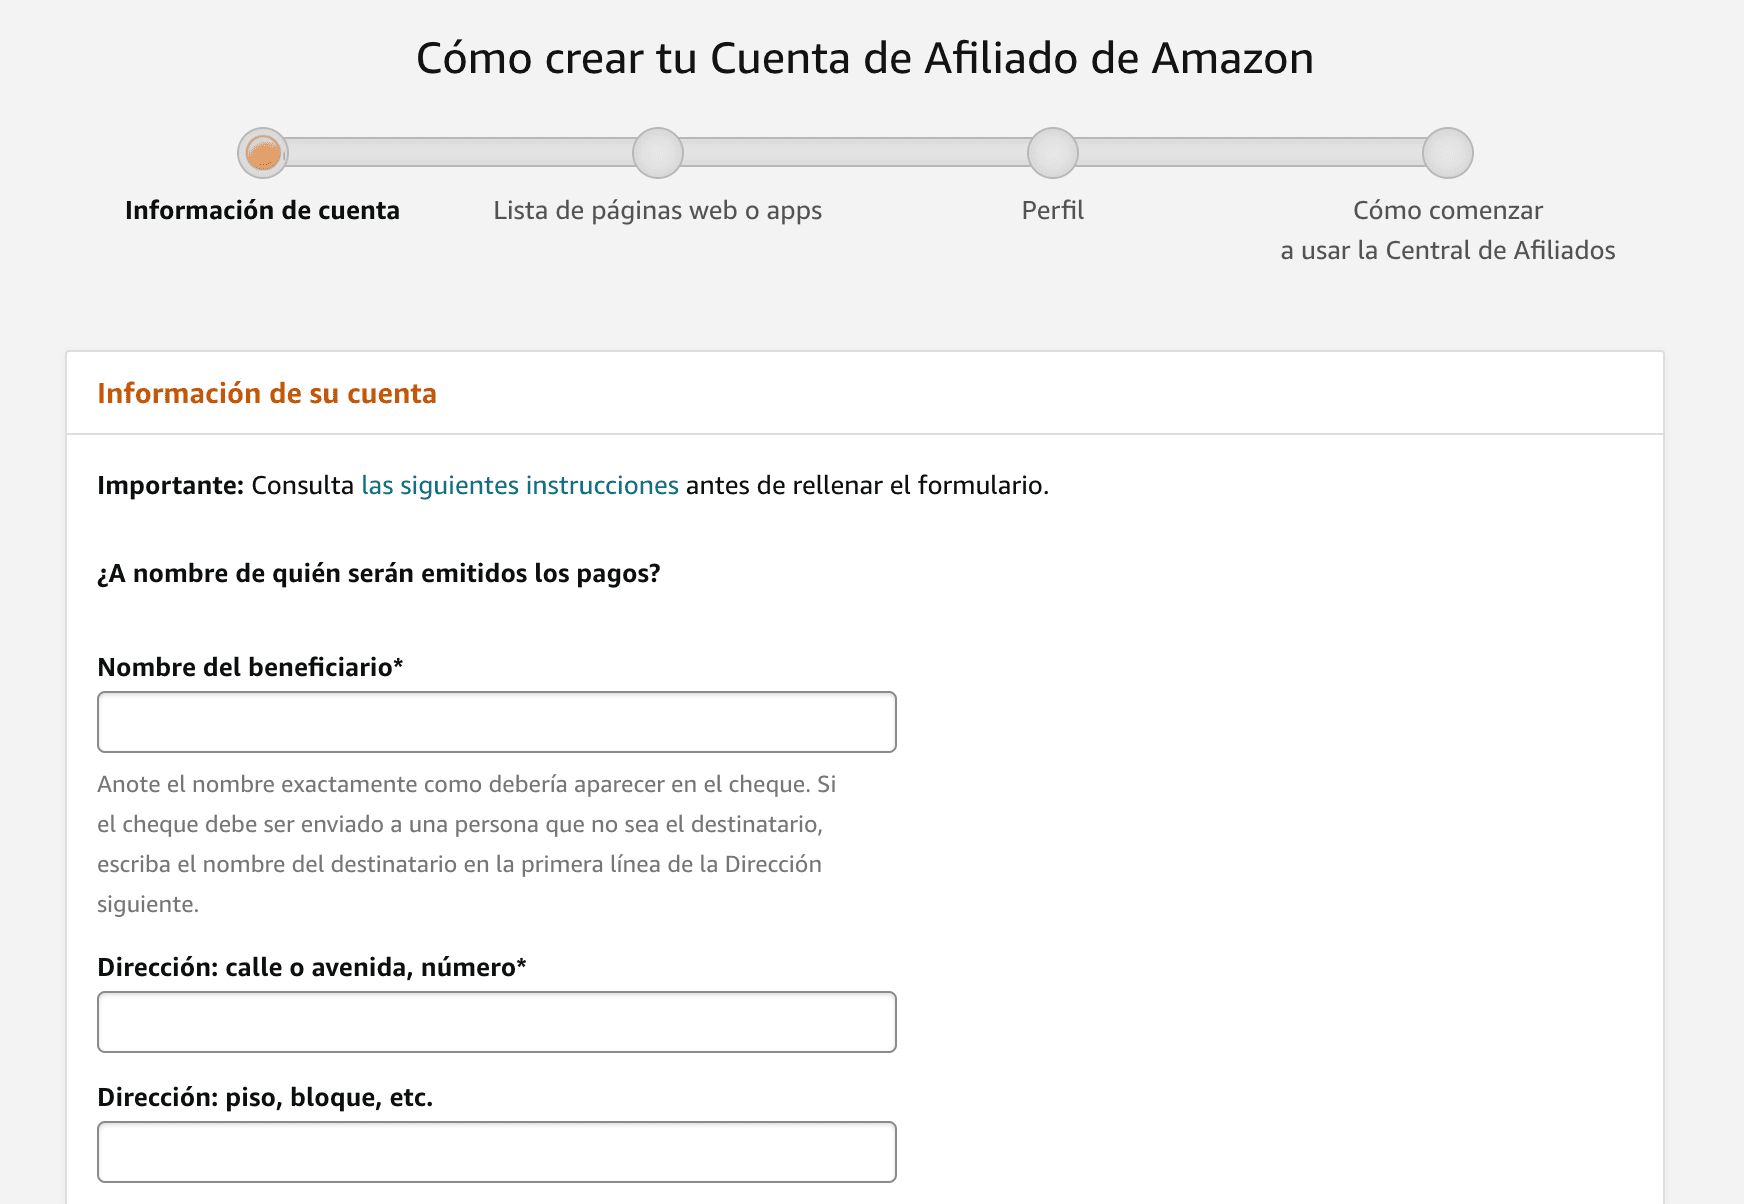 Datos del beneficiario de pago para Amazon Afiliados